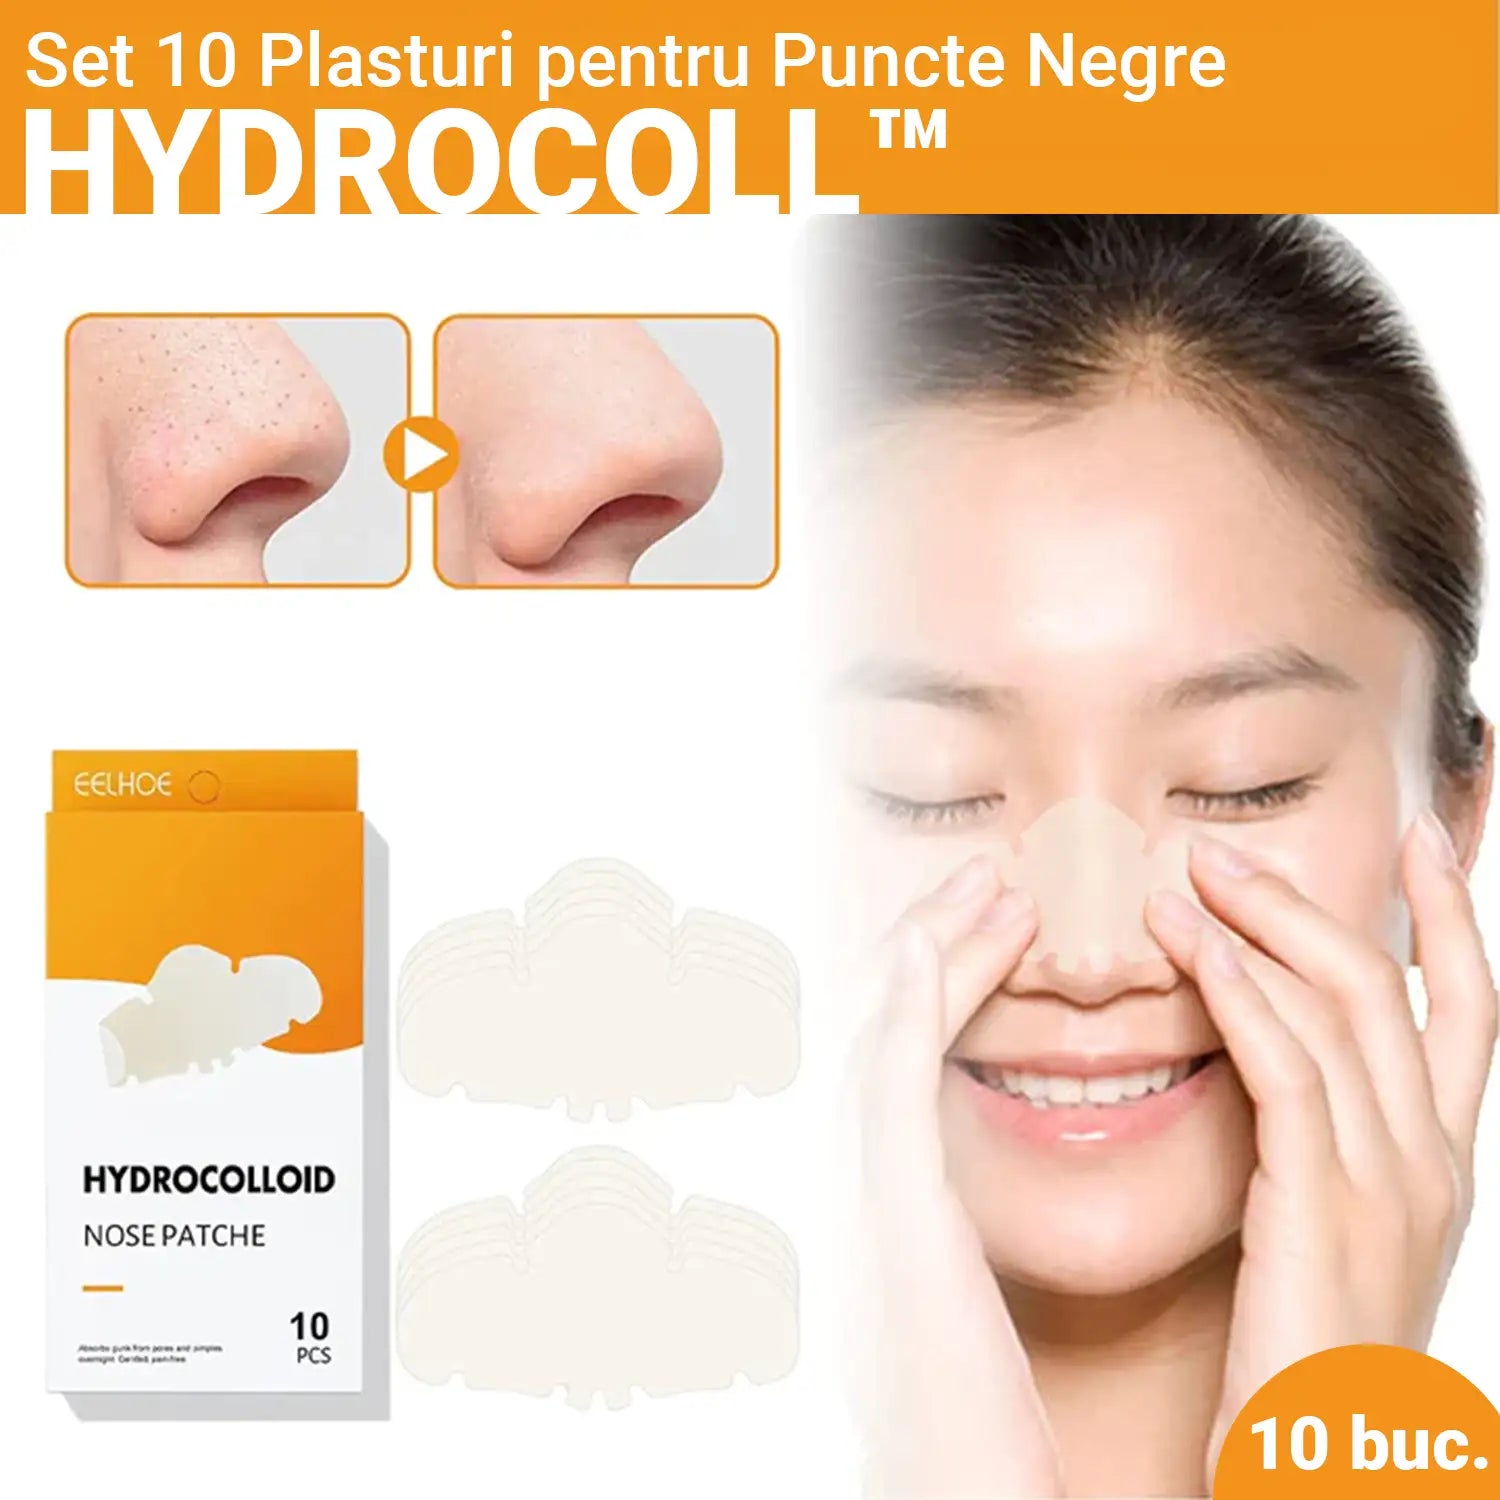 Set 10 Plasturi pentru Puncte Negre HYDROCOLL™